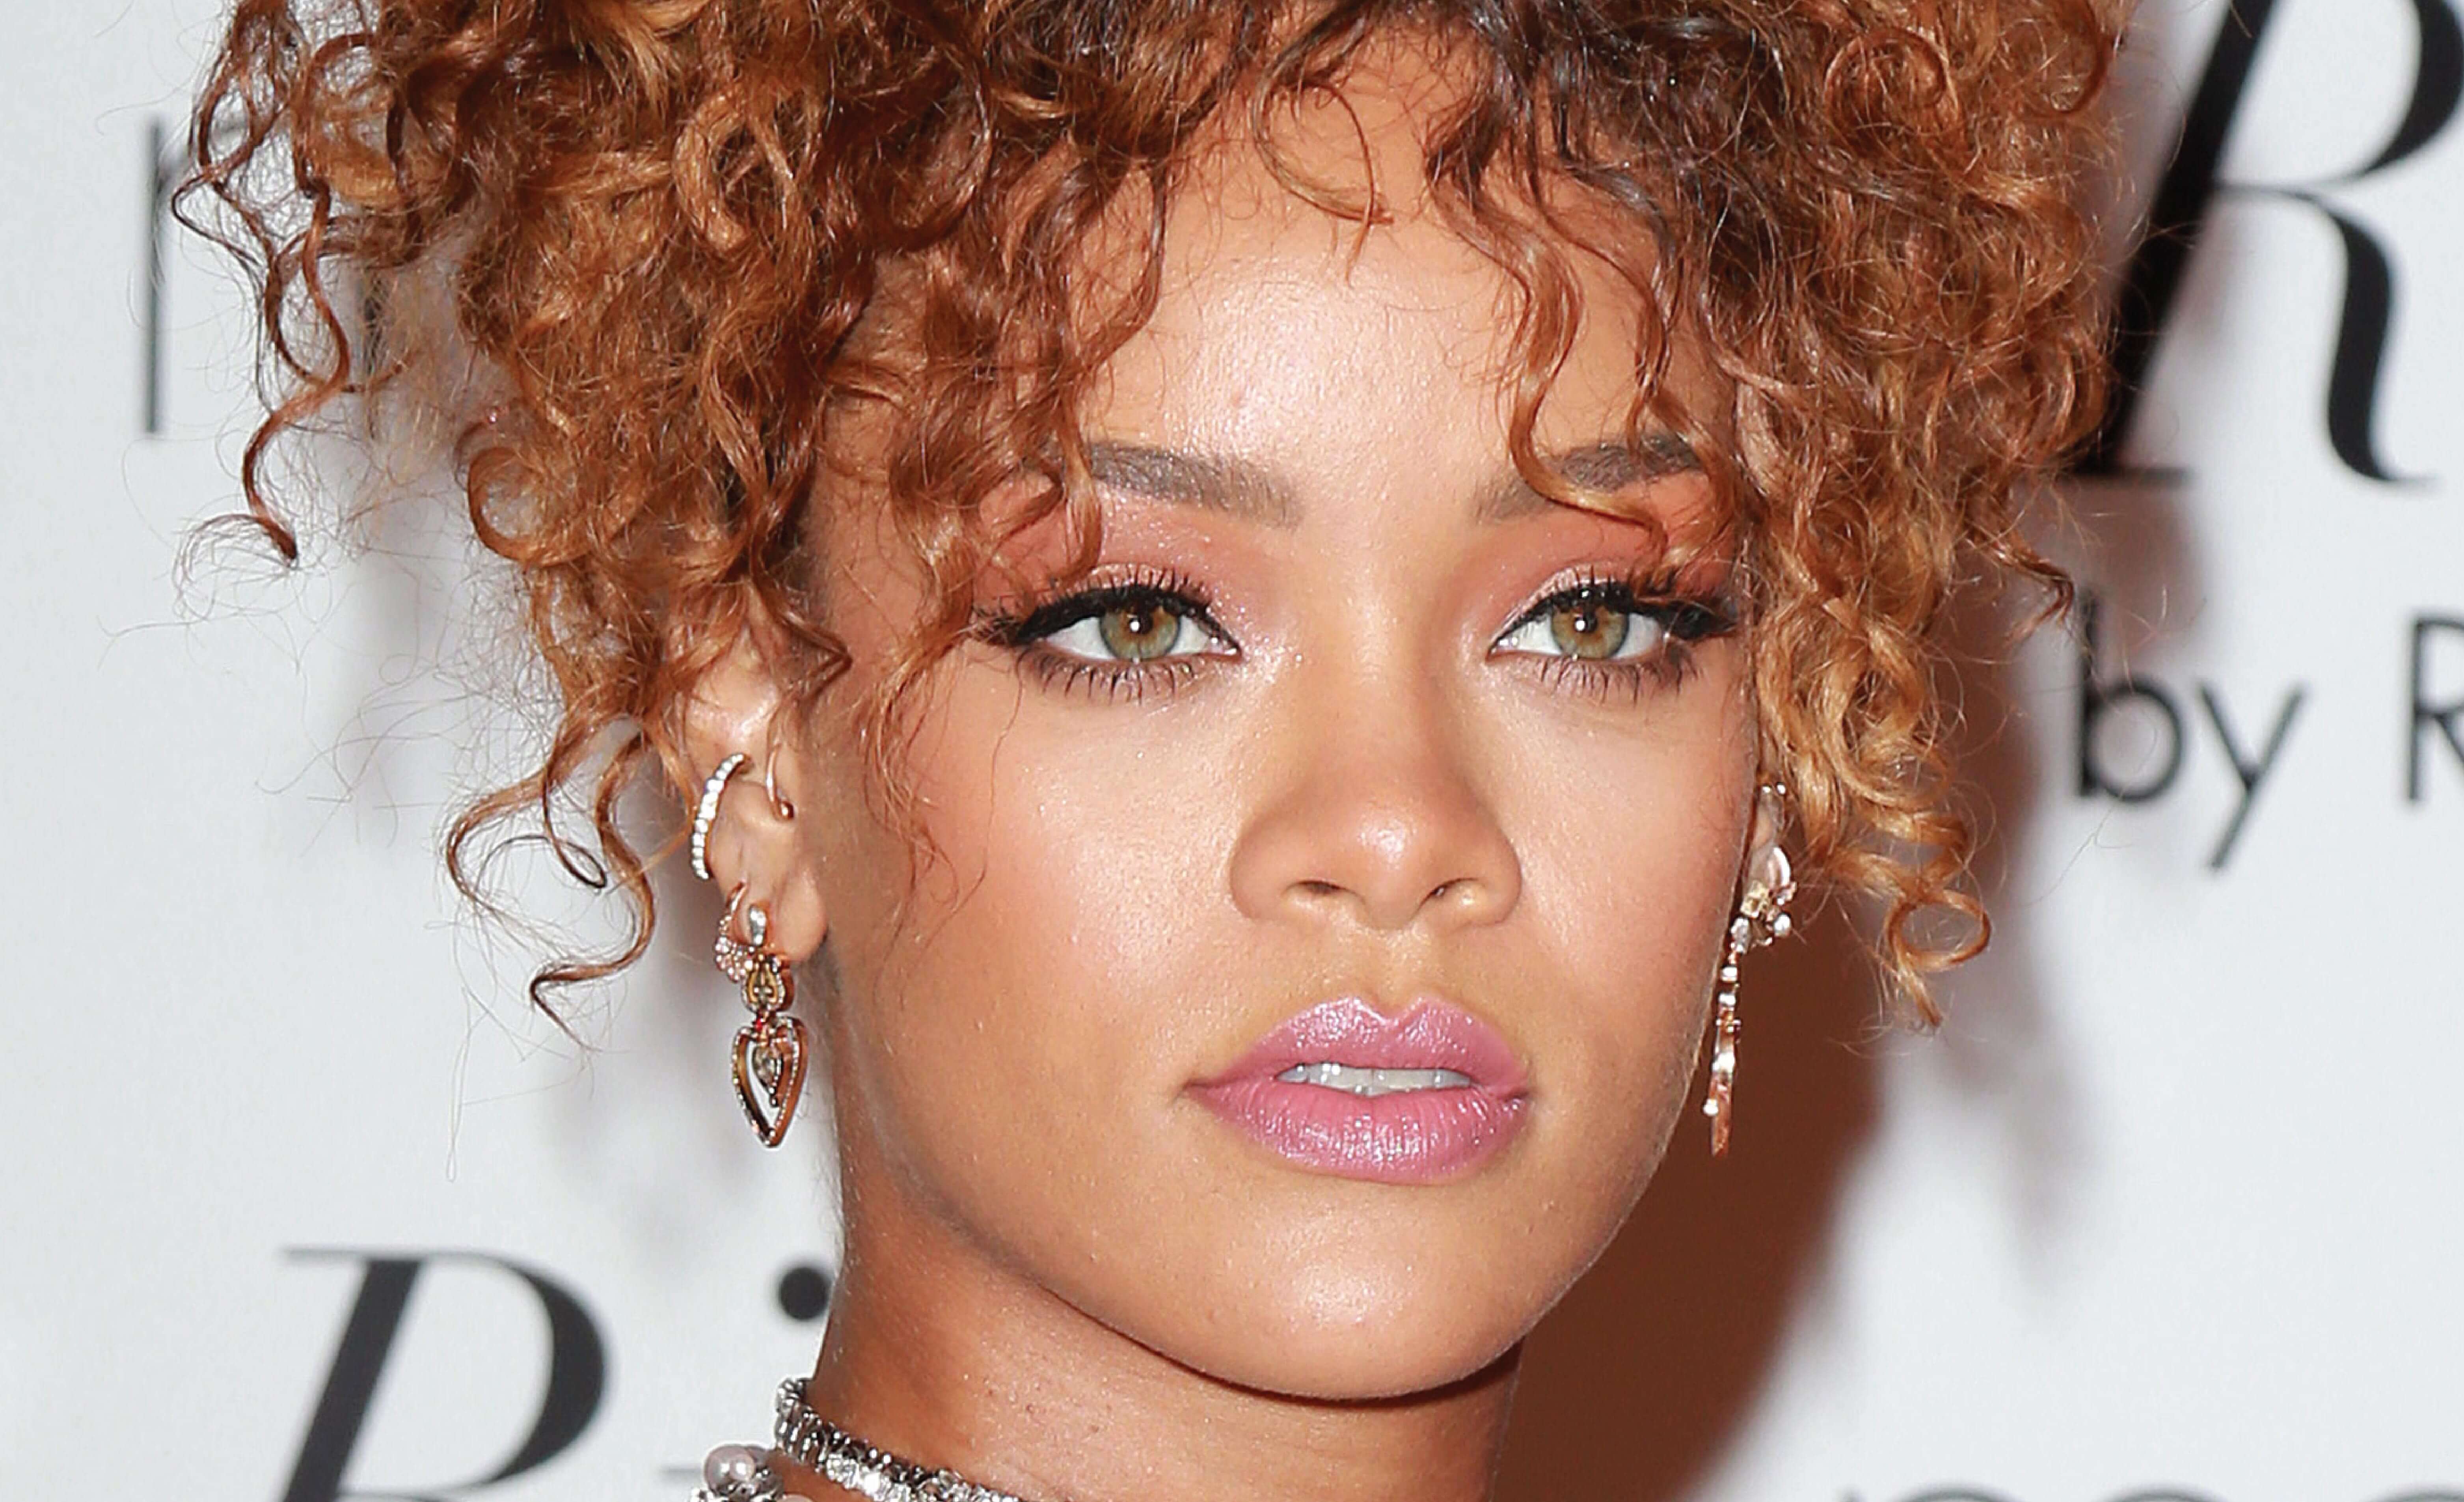 Has Rihanna had Cosmetic Surgery?